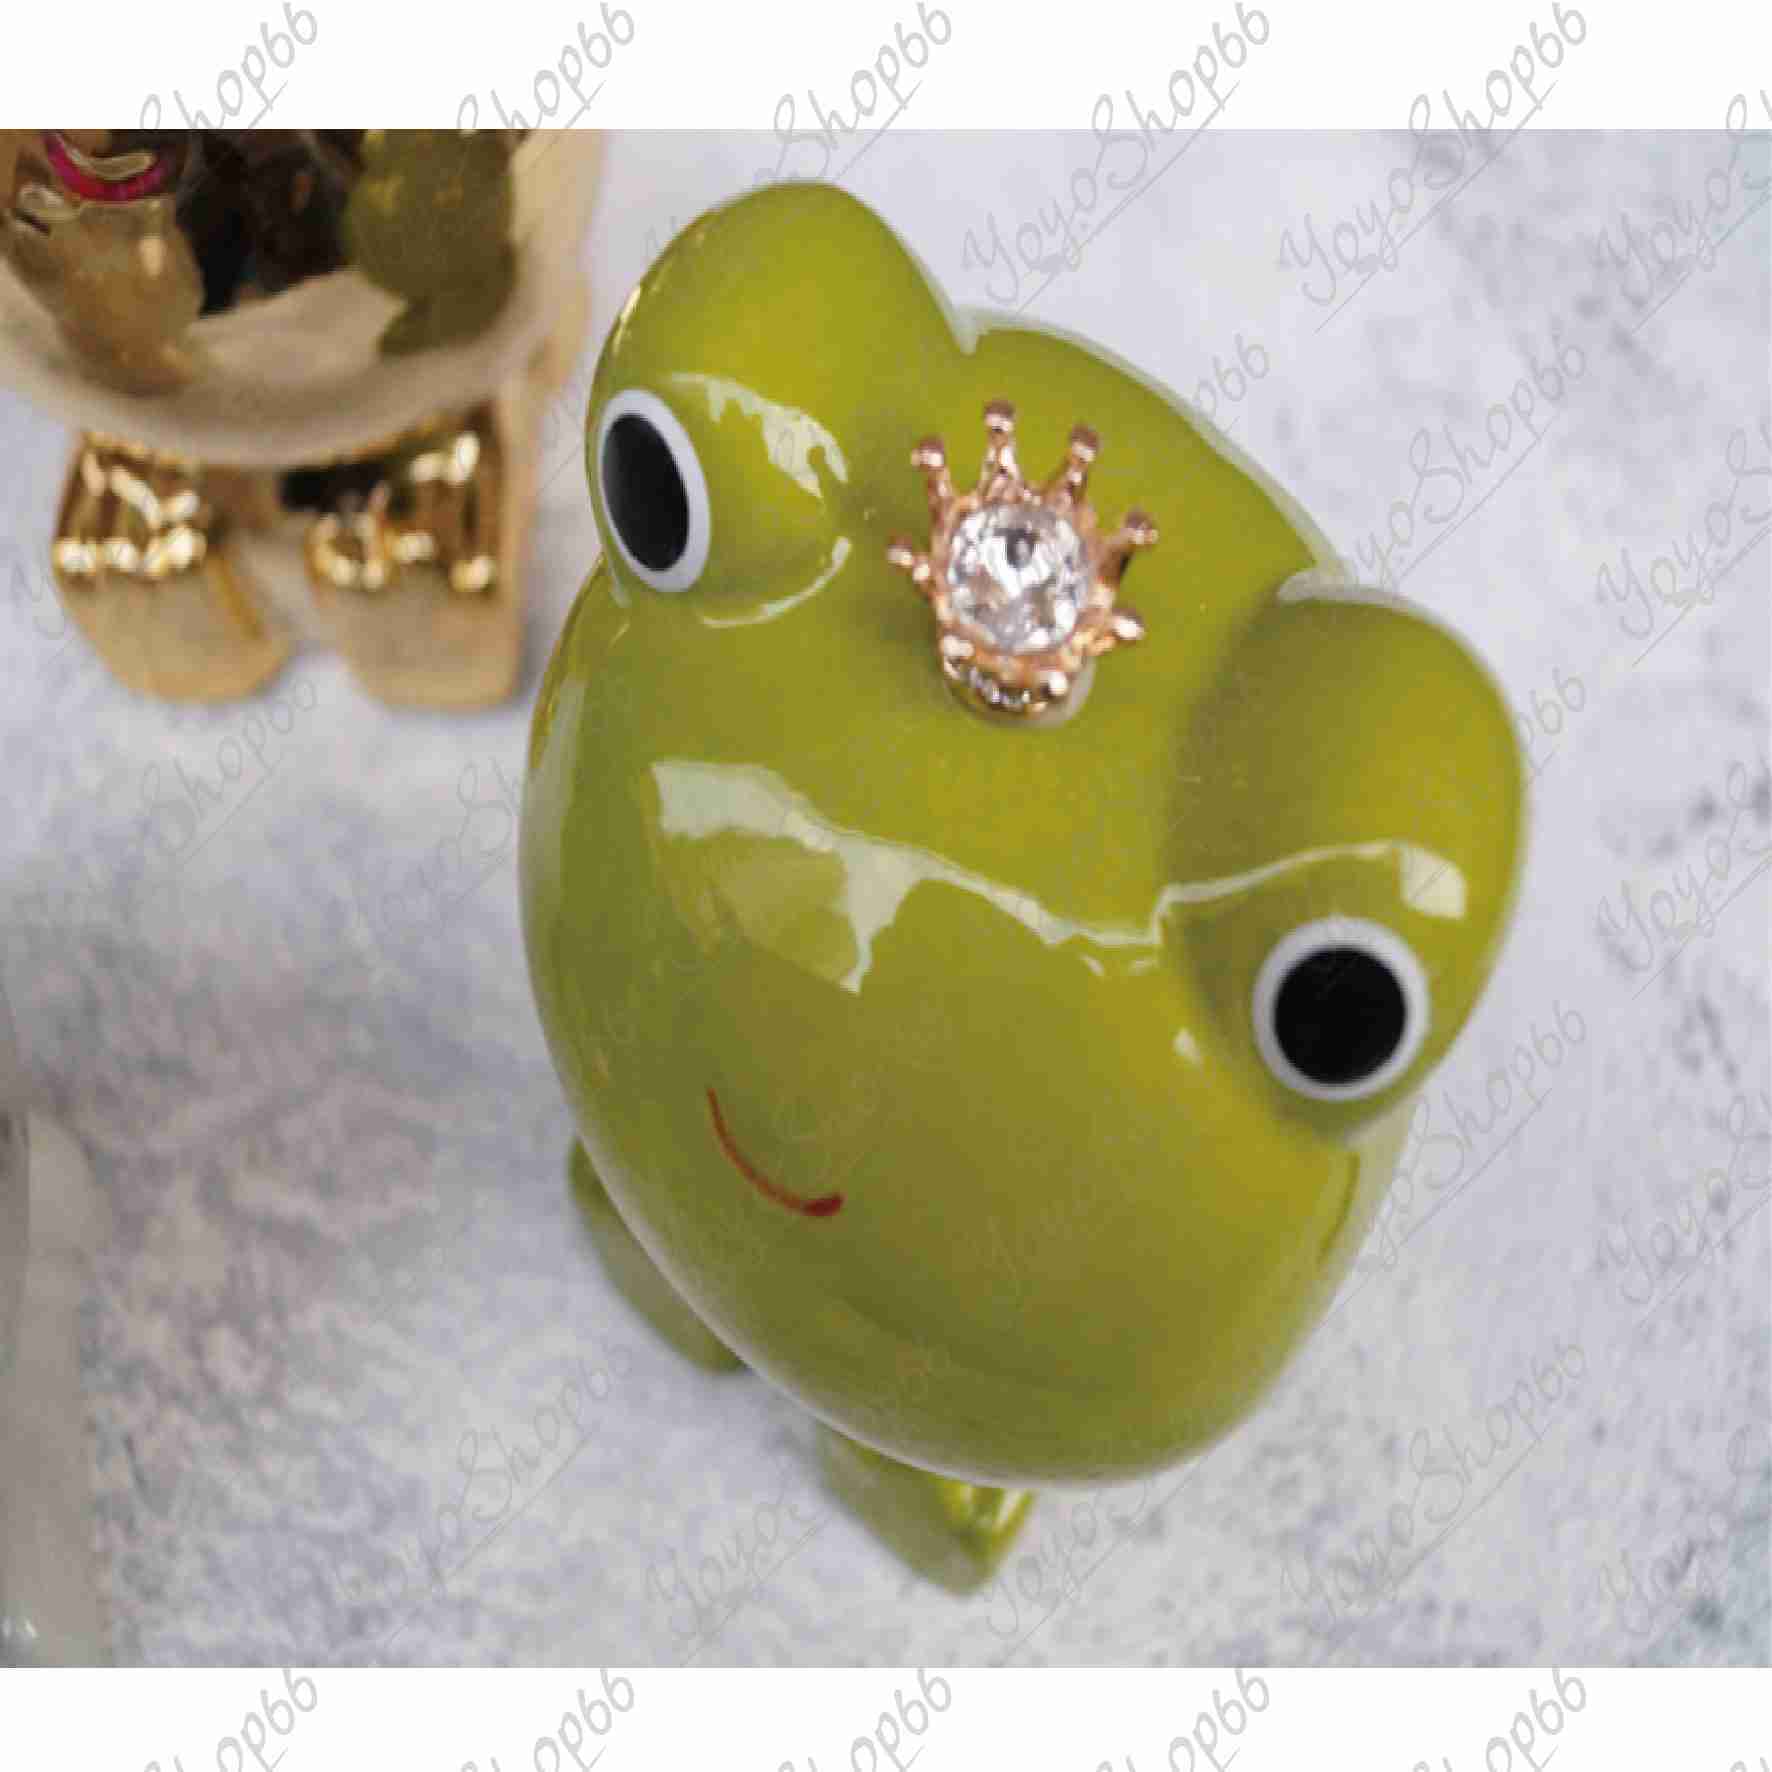 #672 陶瓷青蛙王子 歐式創意 皇冠 造型存錢筒 造型擺設 儲蓄罐 錢筒 擺件 客廳桌面 儲蓄罐 客廳桌面【愛尚生活】